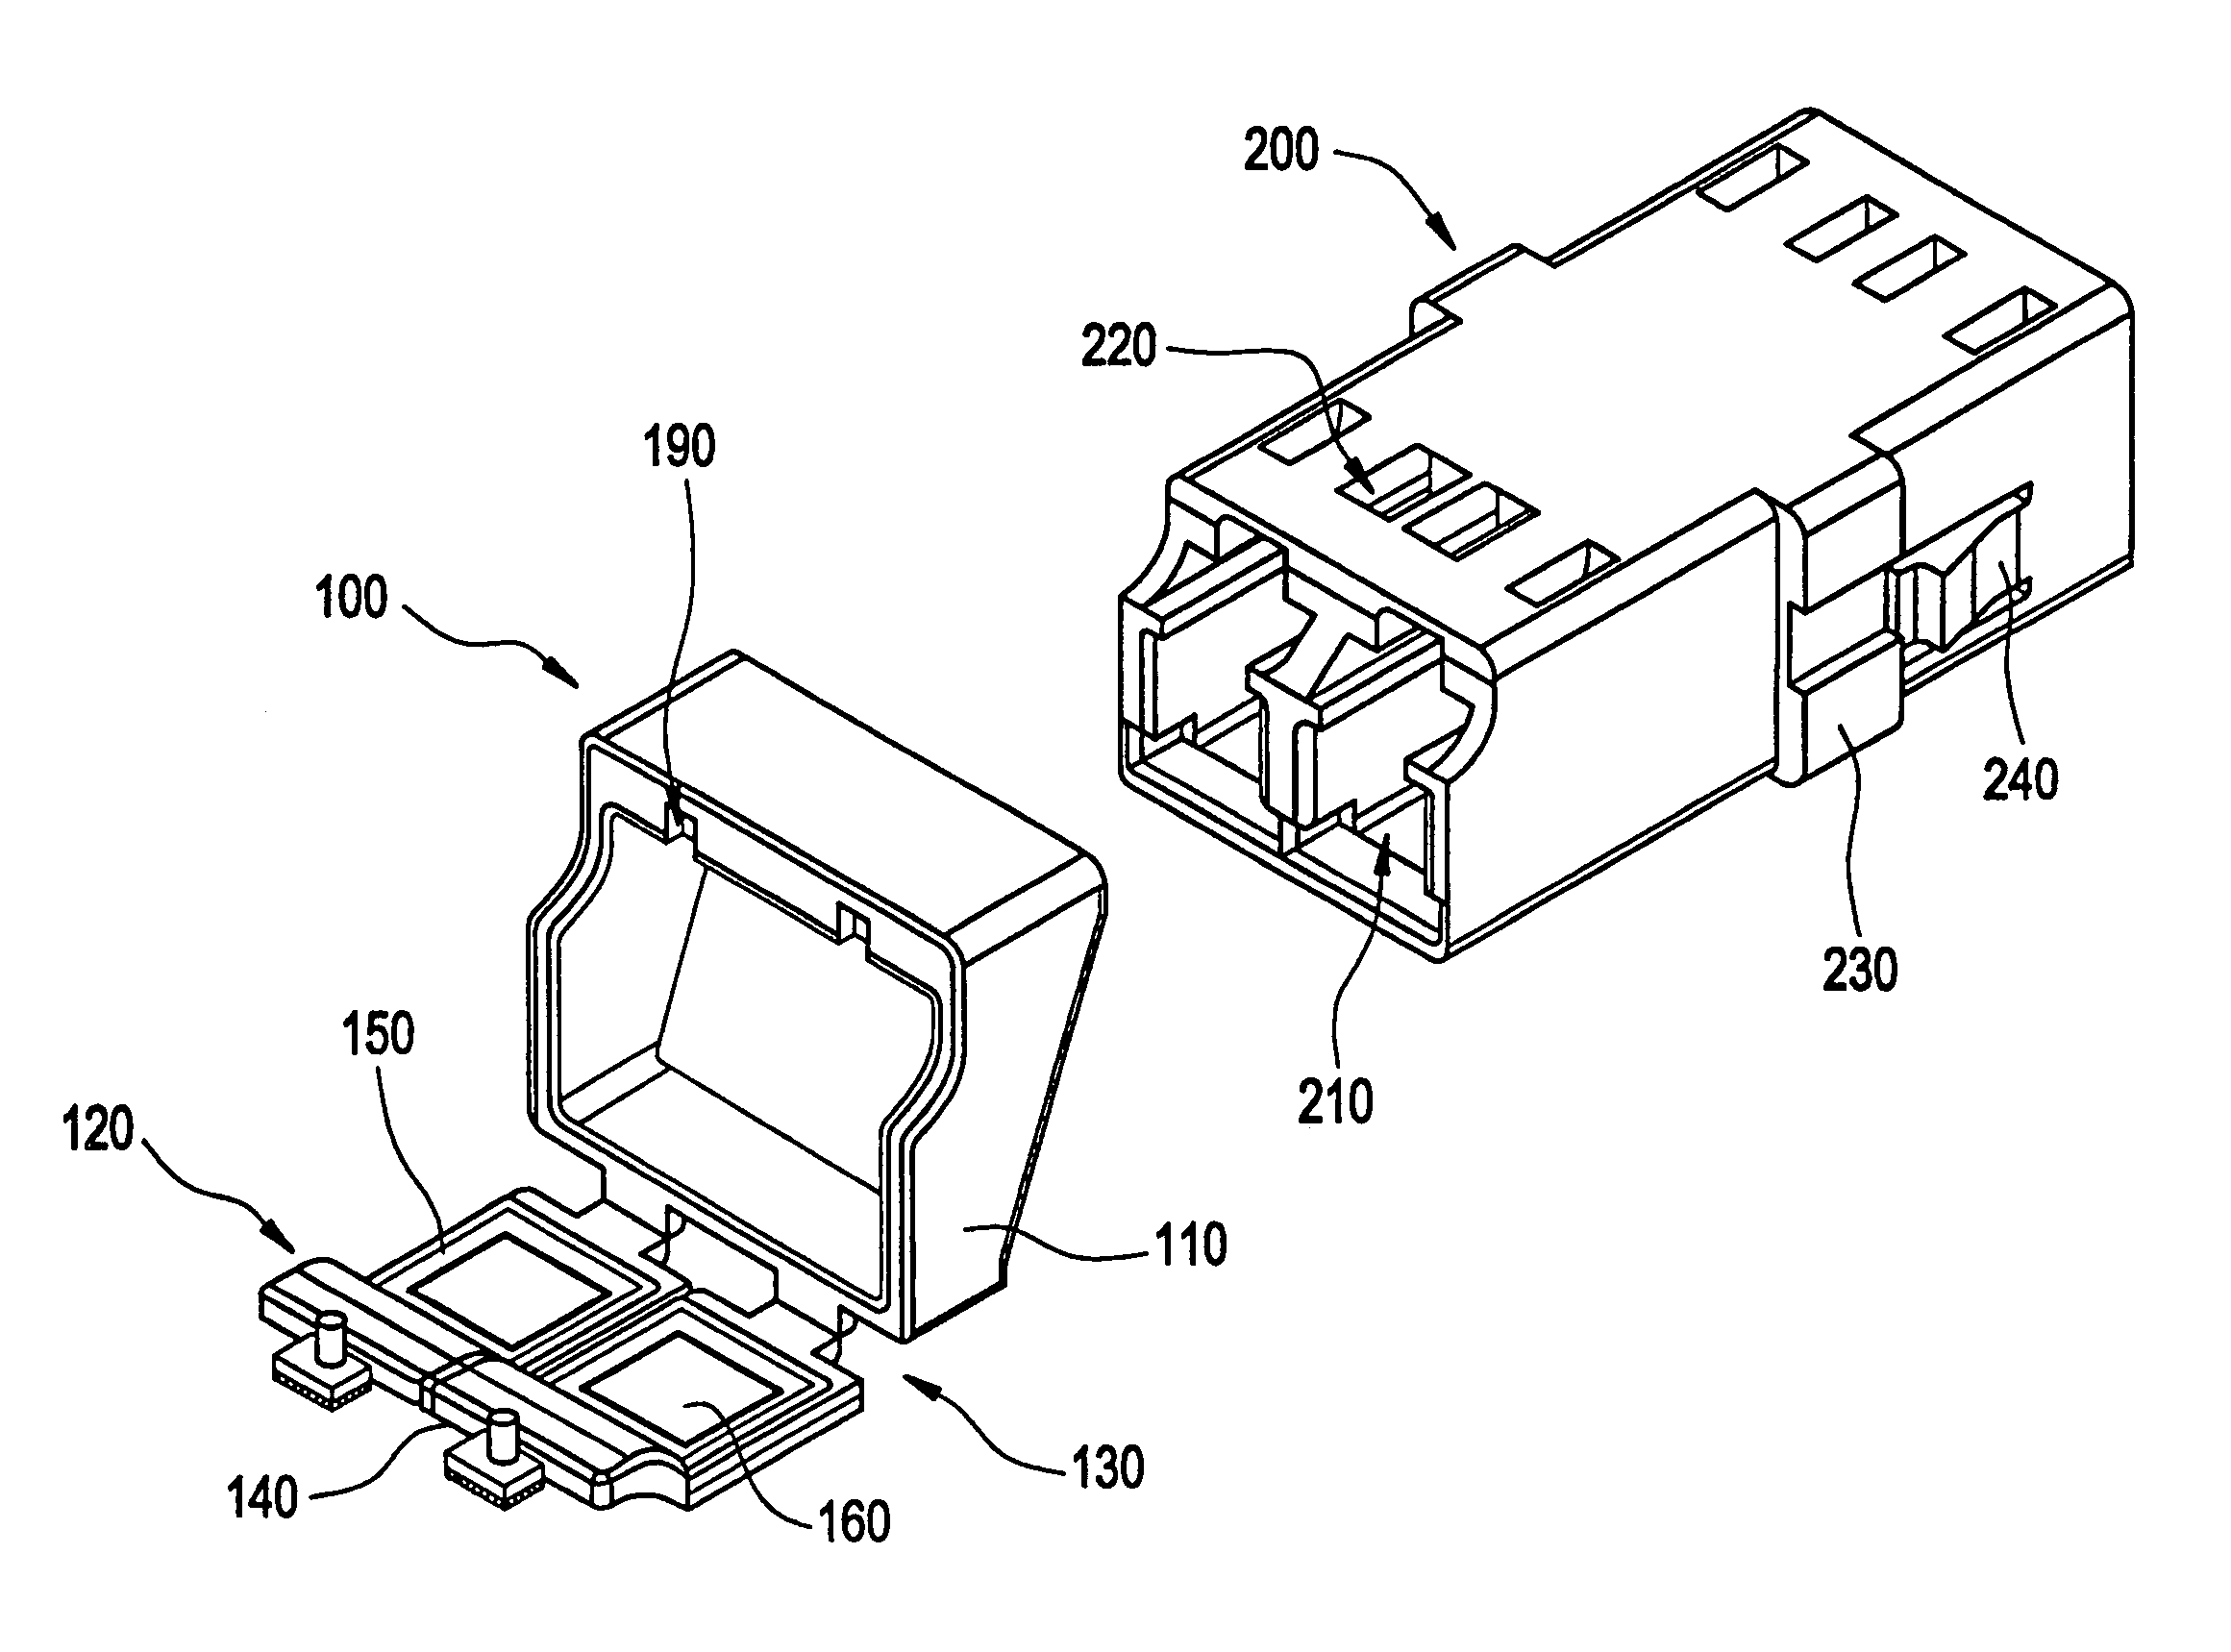 Dust shutter for an optical adapter